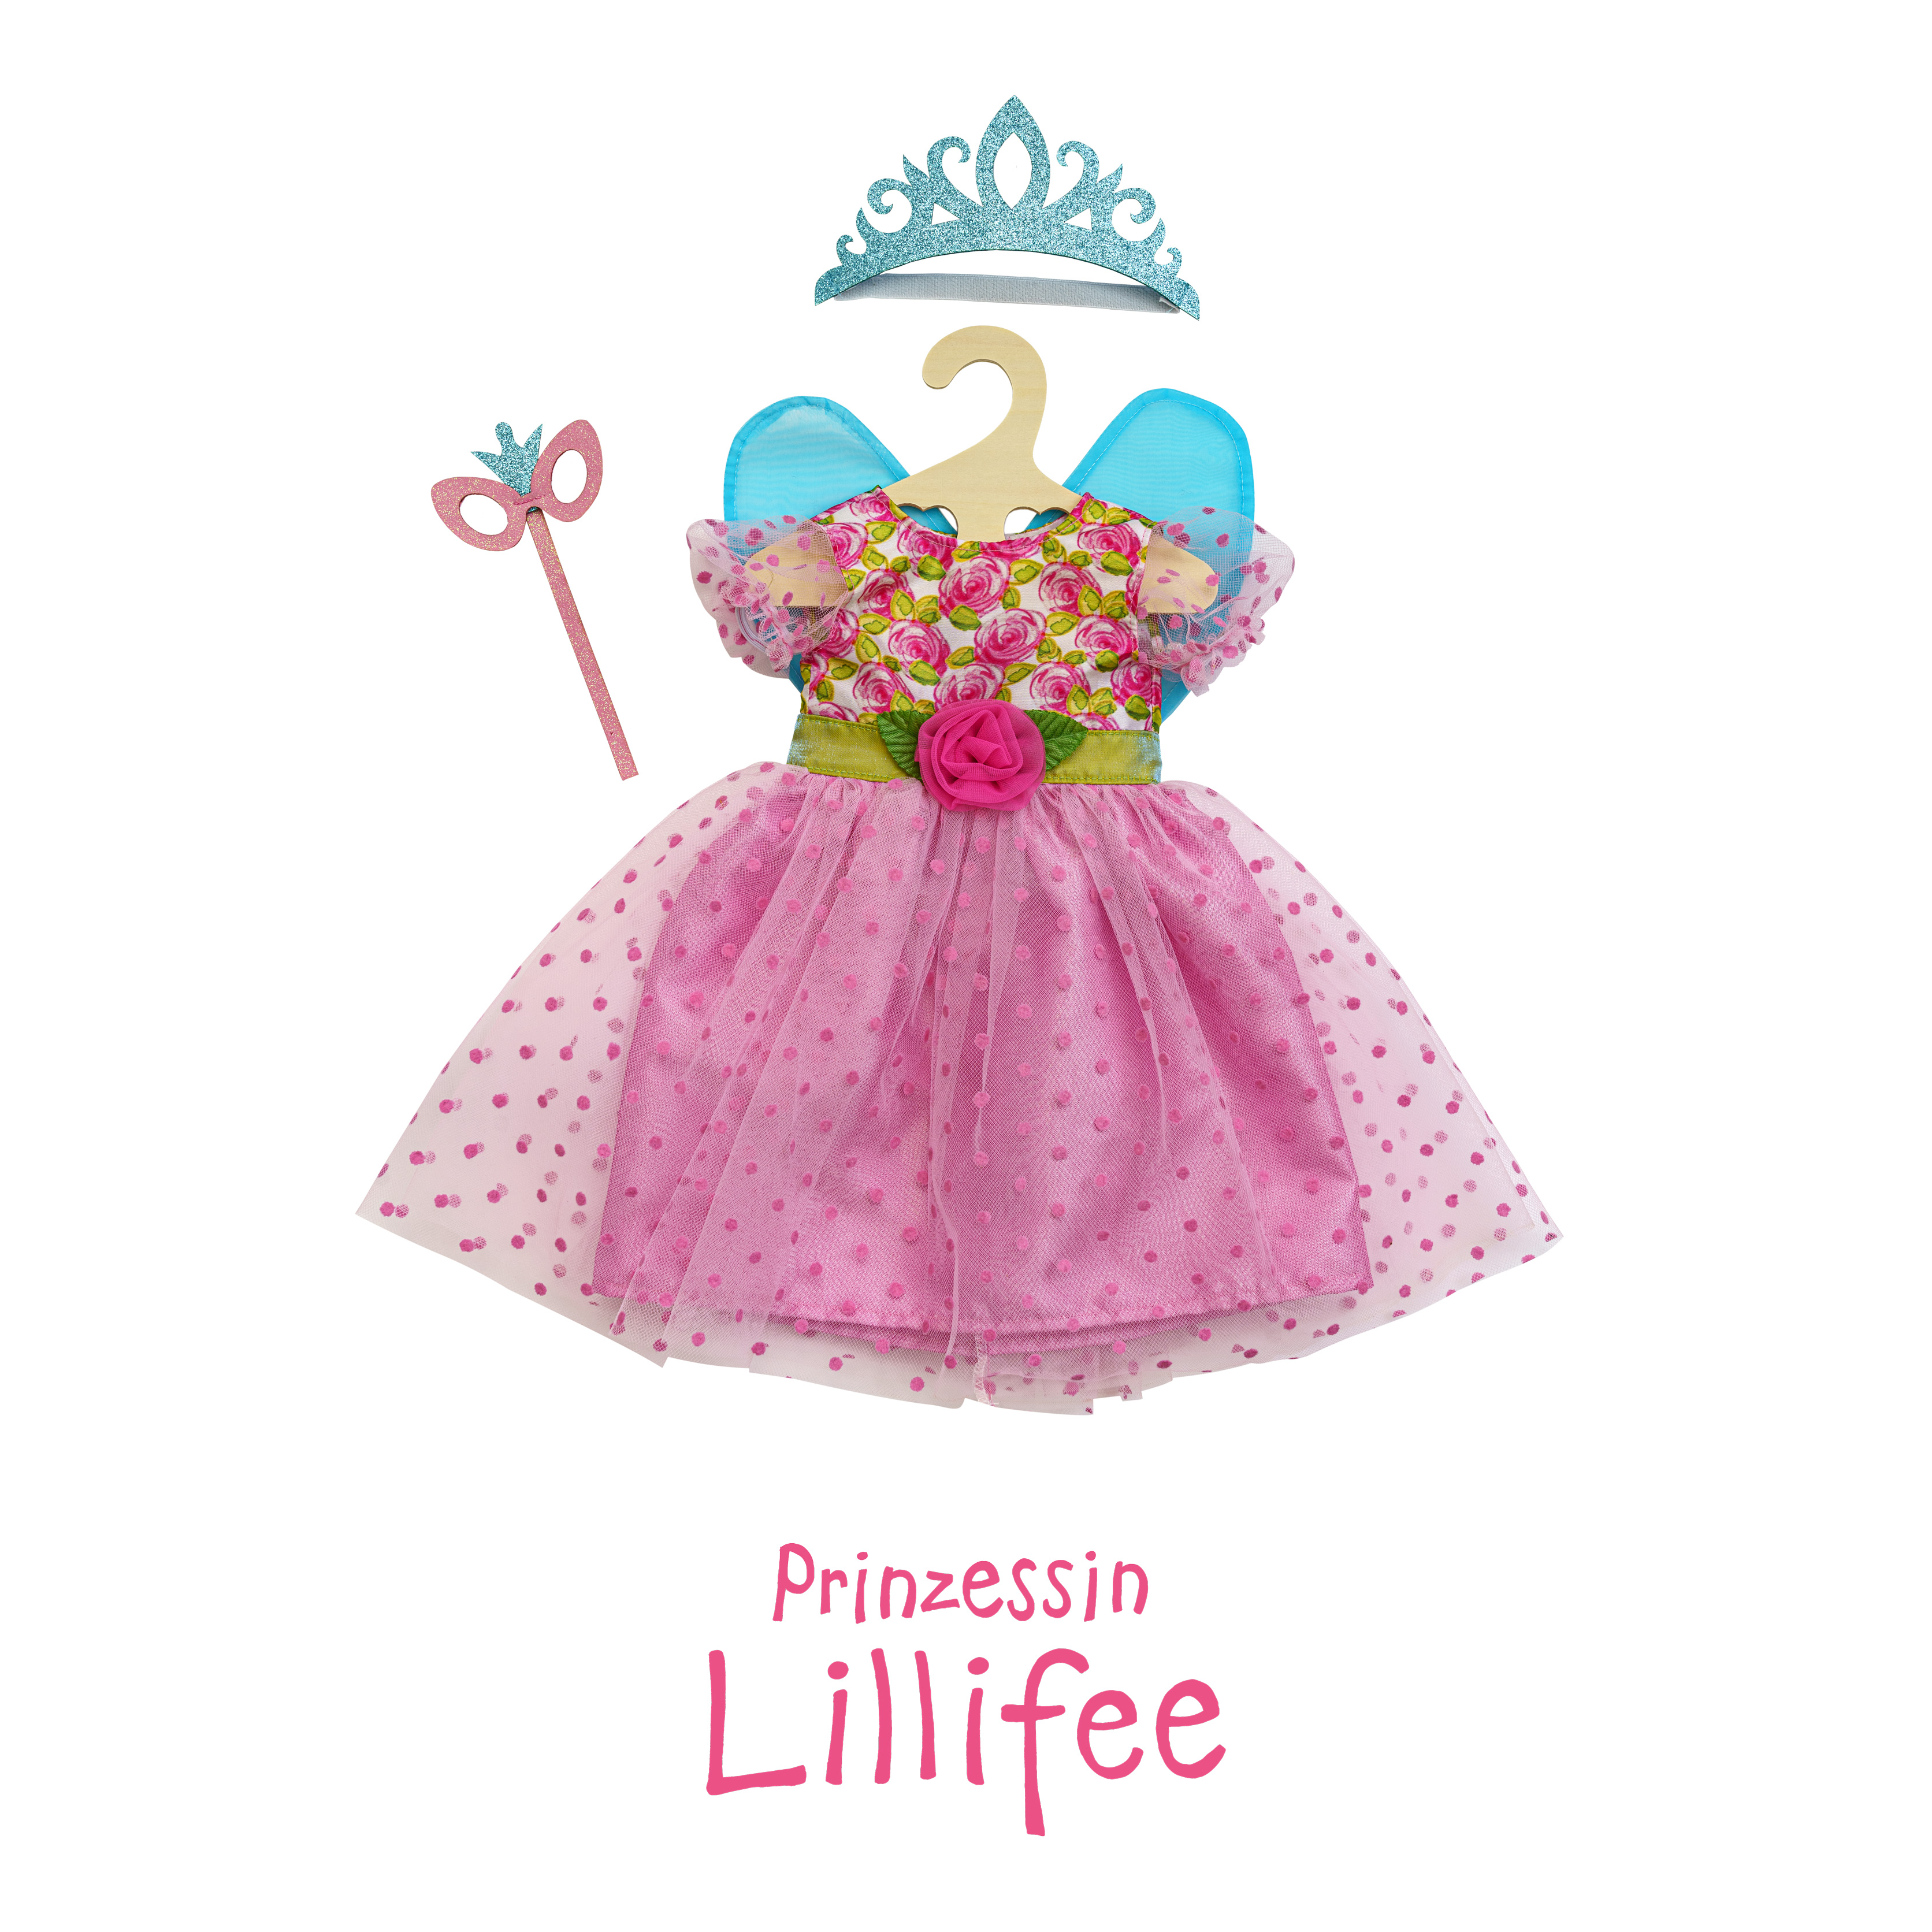 Puppenkleid "Prinzessin Lillifee" mit Glitzerkrone und Augenmaske, 3-teilig, Gr. 28-35 cm